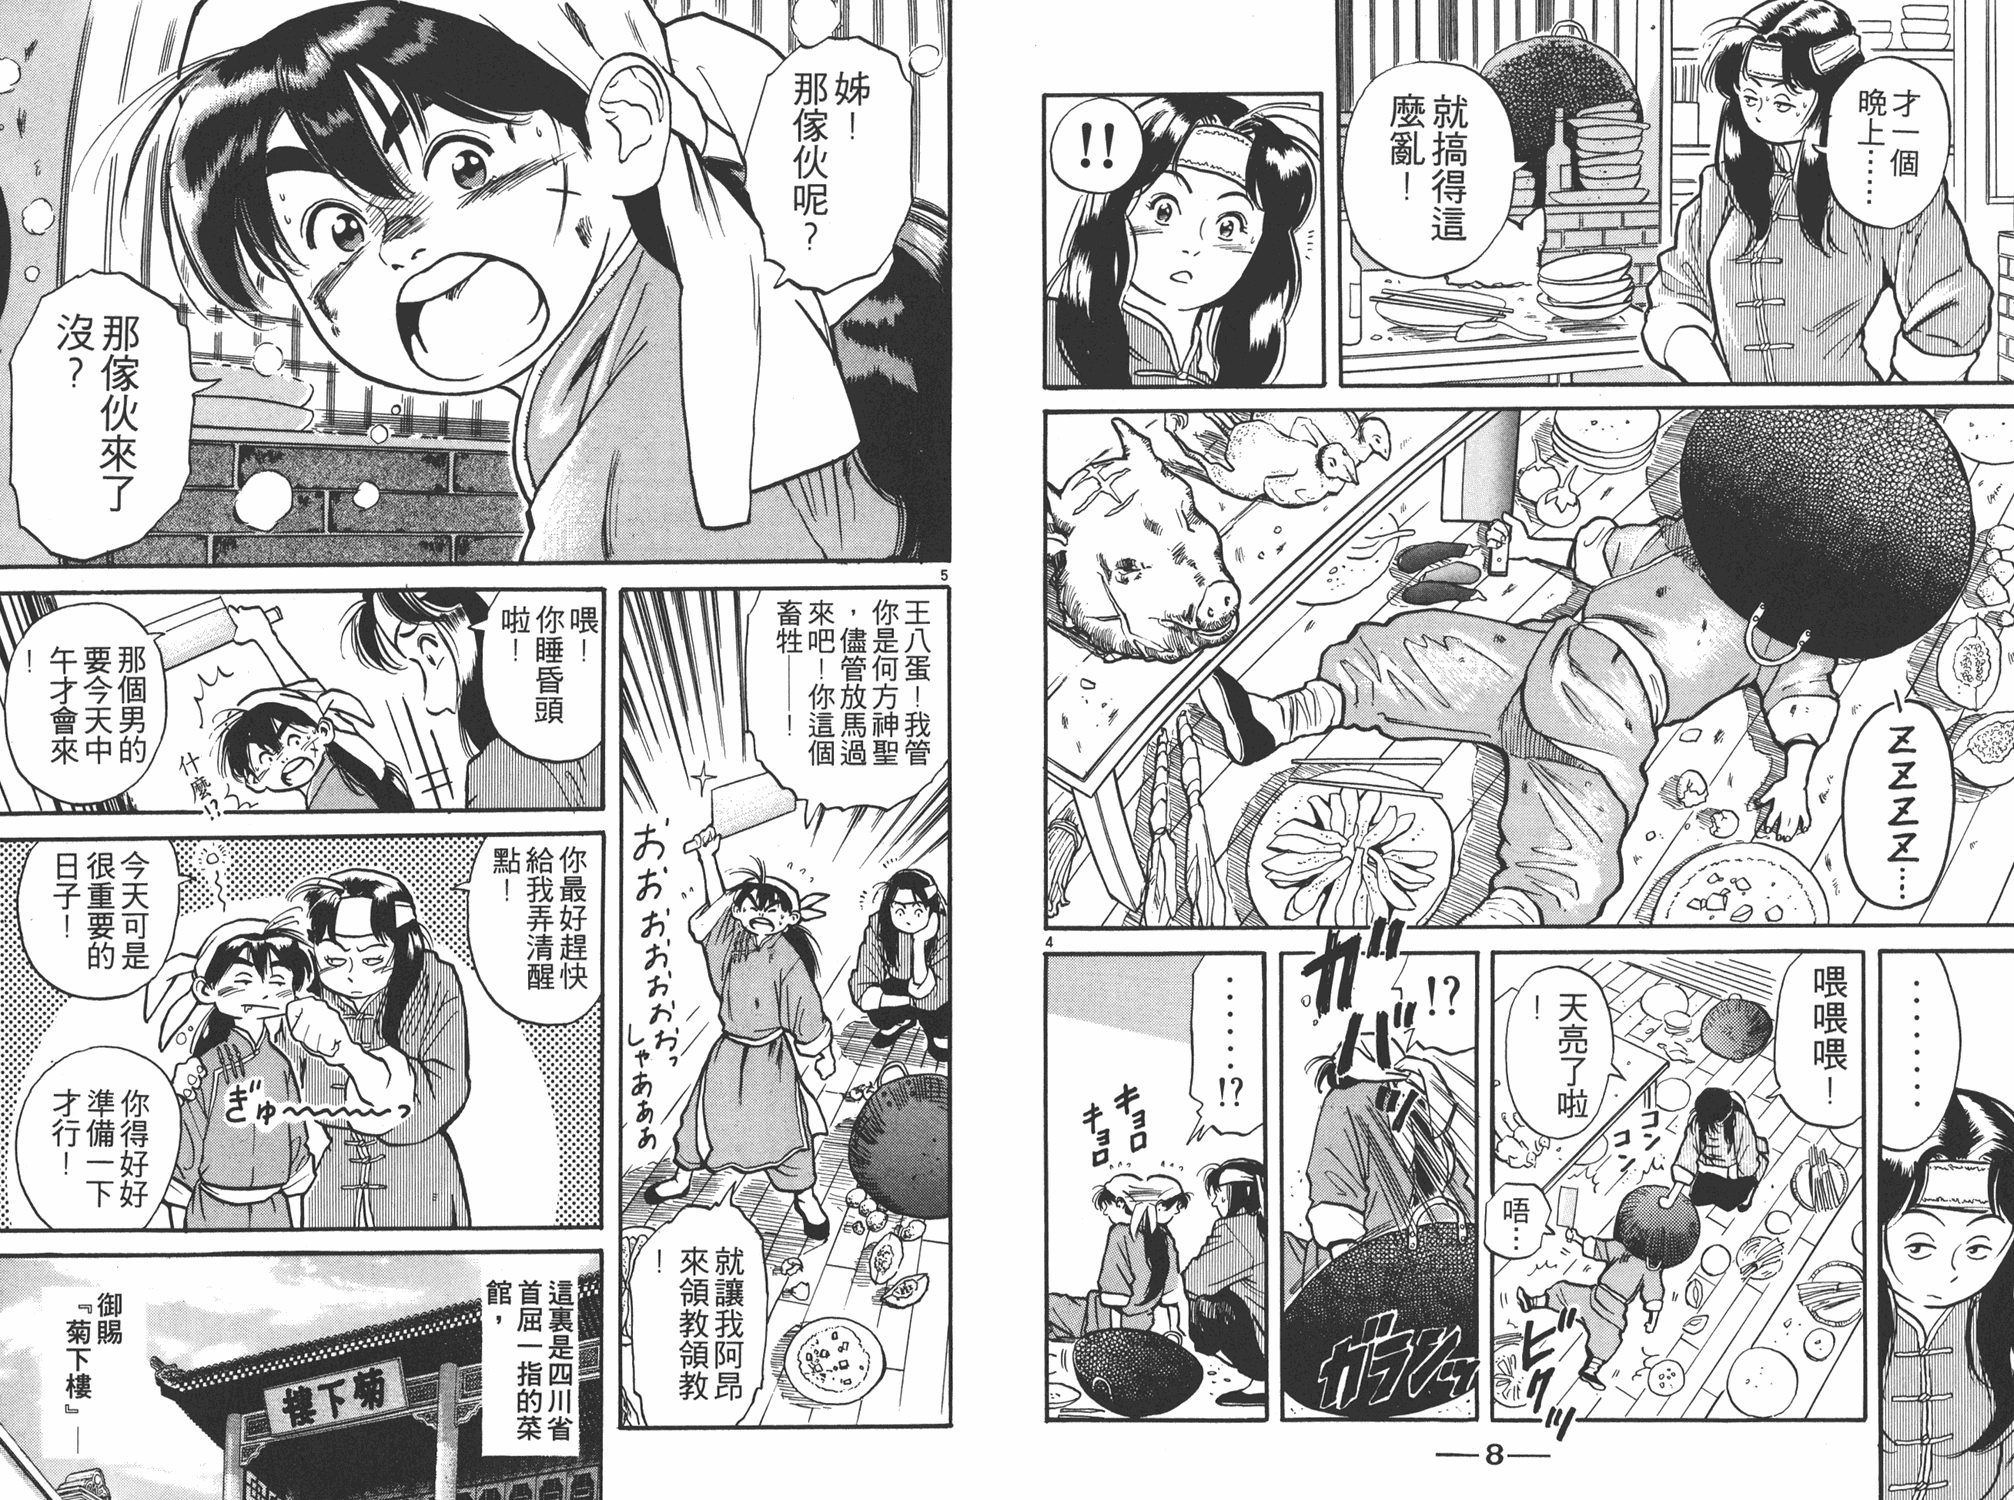 中华小当家第二季国语版全集在线免费观看漫画,第1卷5图